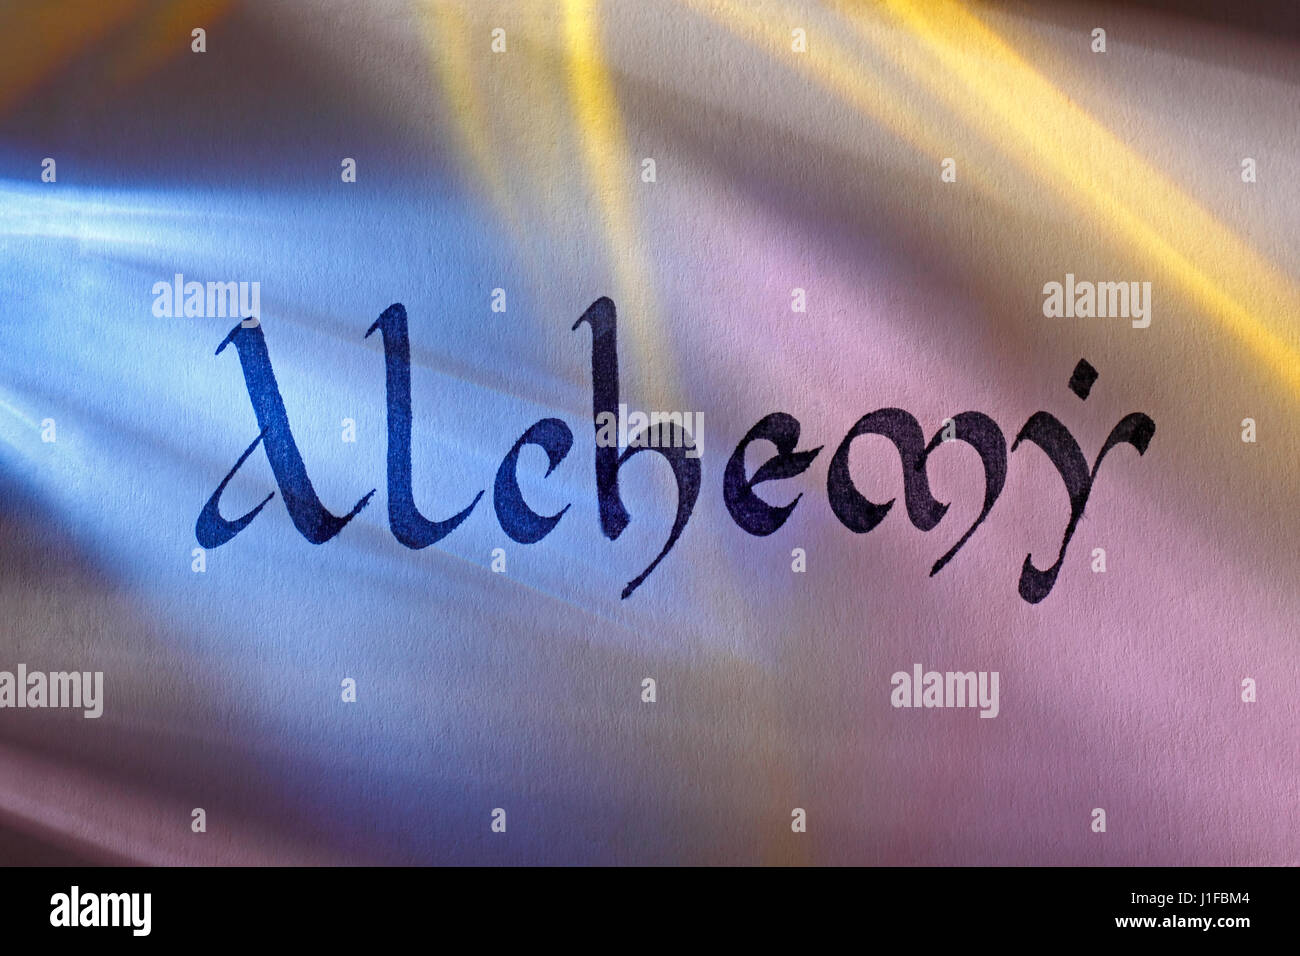 Handgeschriebene Wort Alchemie im mittelalterlichen Latein Skript unter bunten Lichtern. Englischer Sprache. Stockfoto